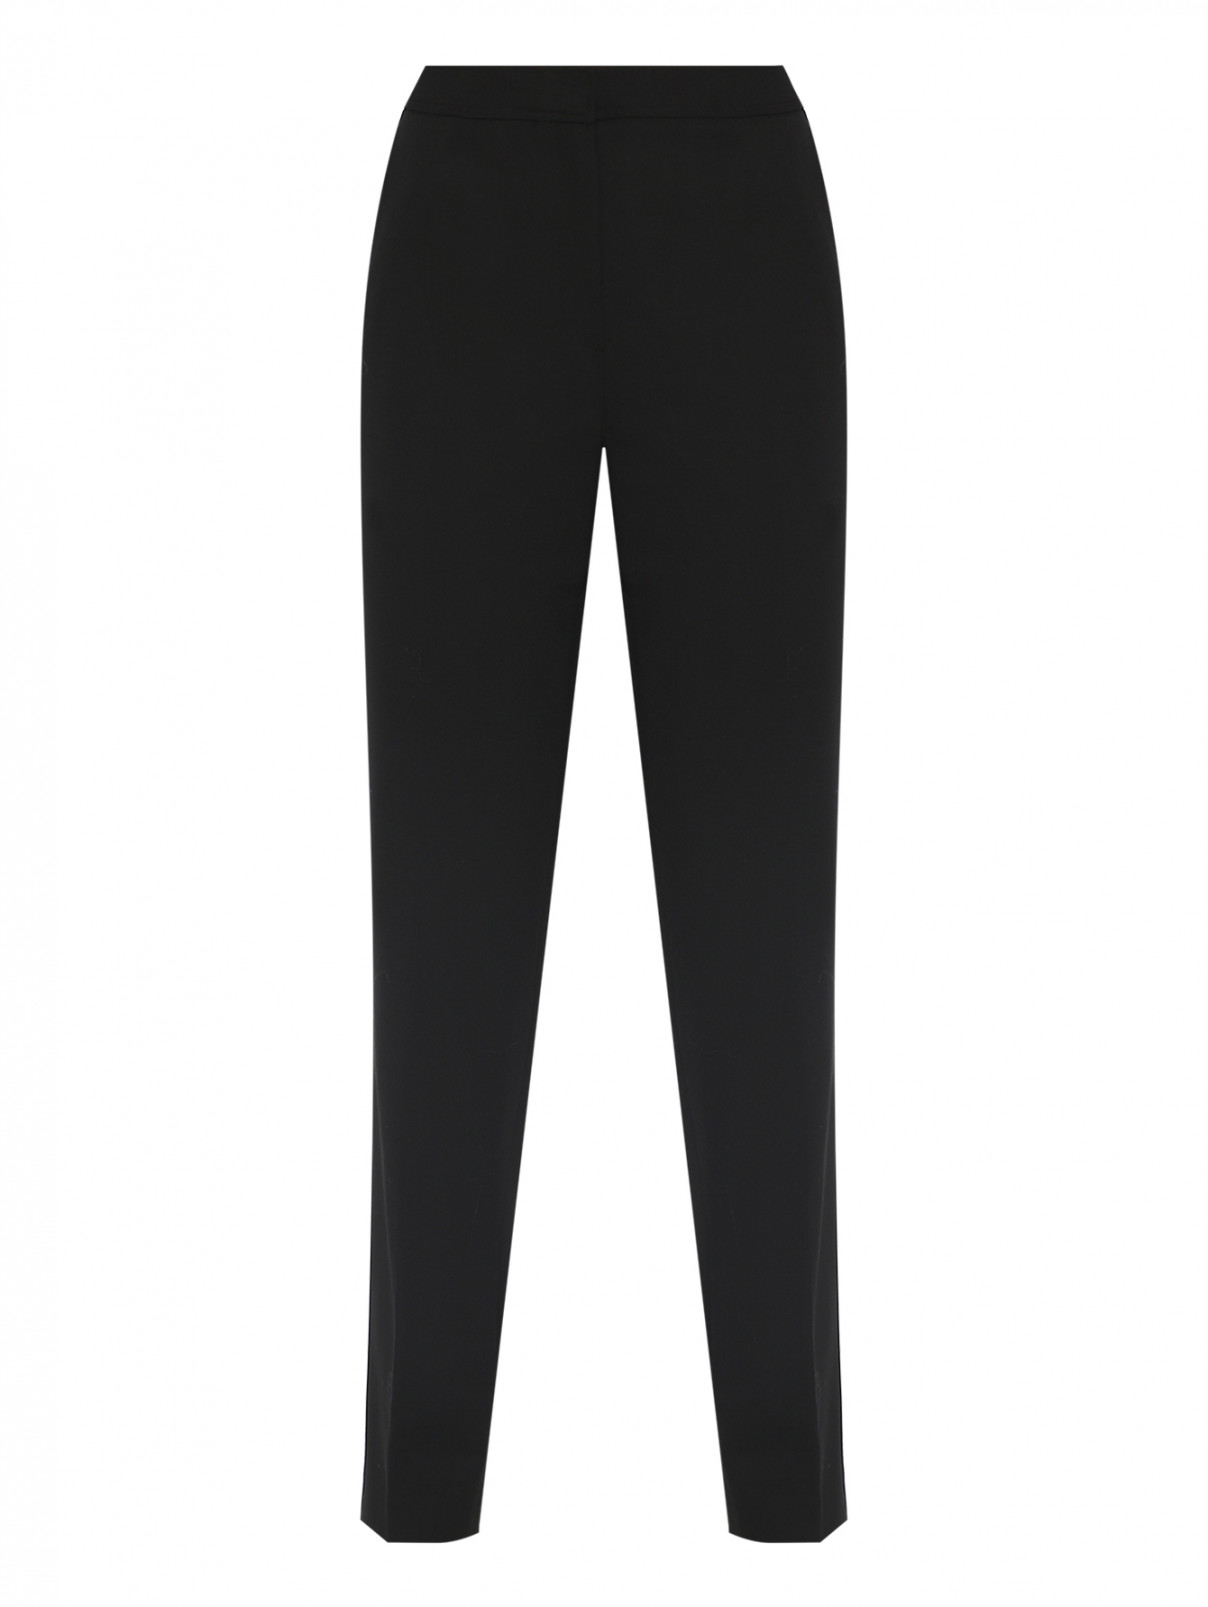 Классические брюки из шерсти Luisa Spagnoli  –  Общий вид  – Цвет:  Черный